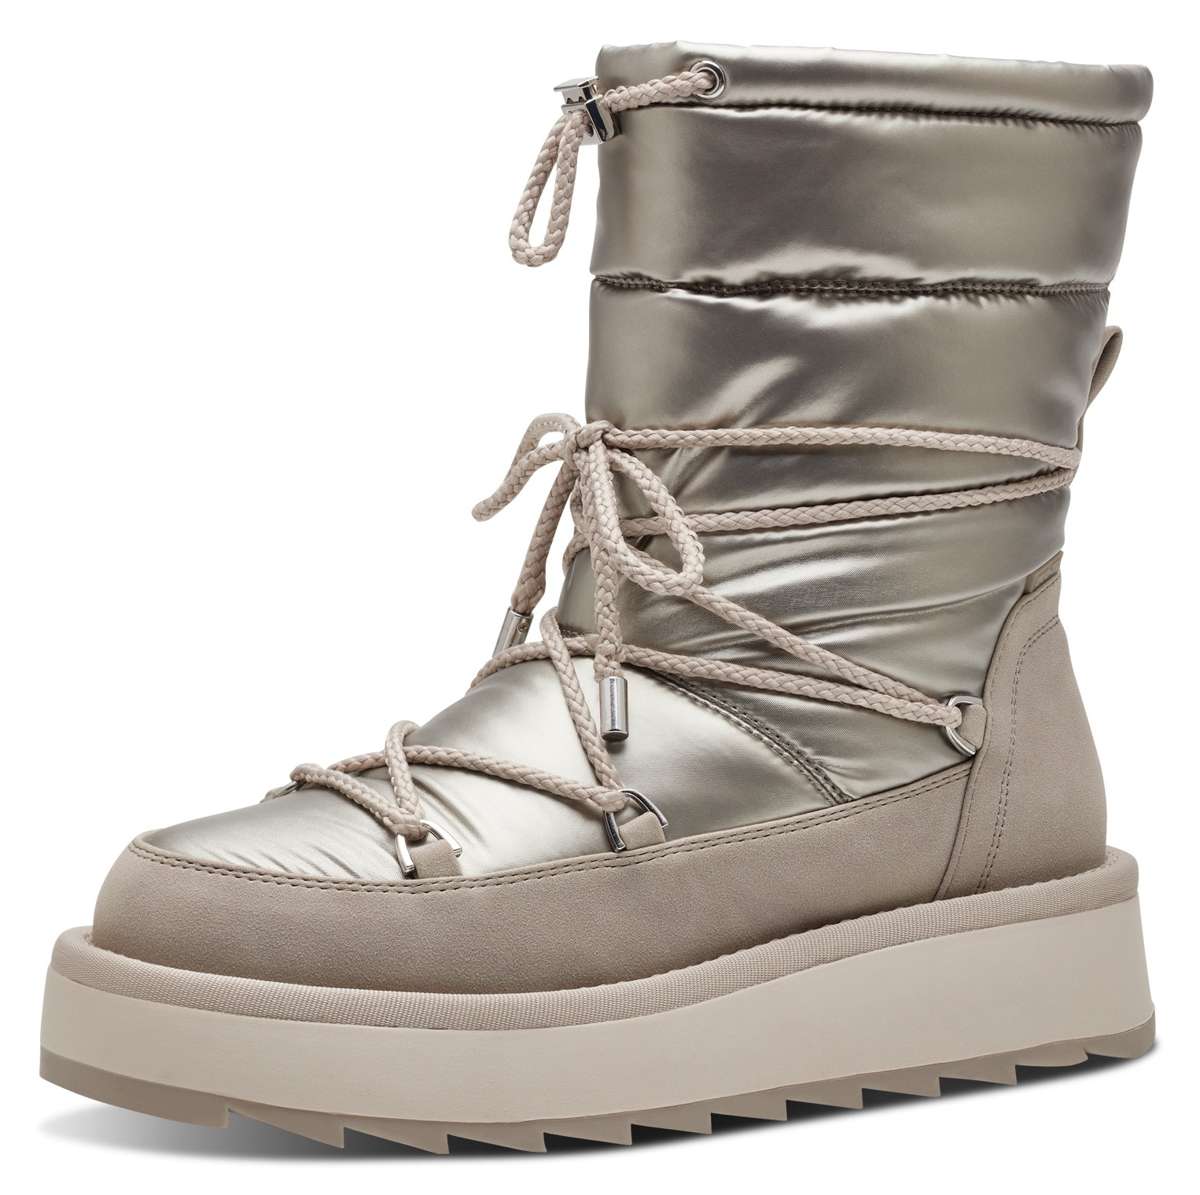 Зимние ботинки с элементами Duo-Tex и прикрепленной шнуровкой.